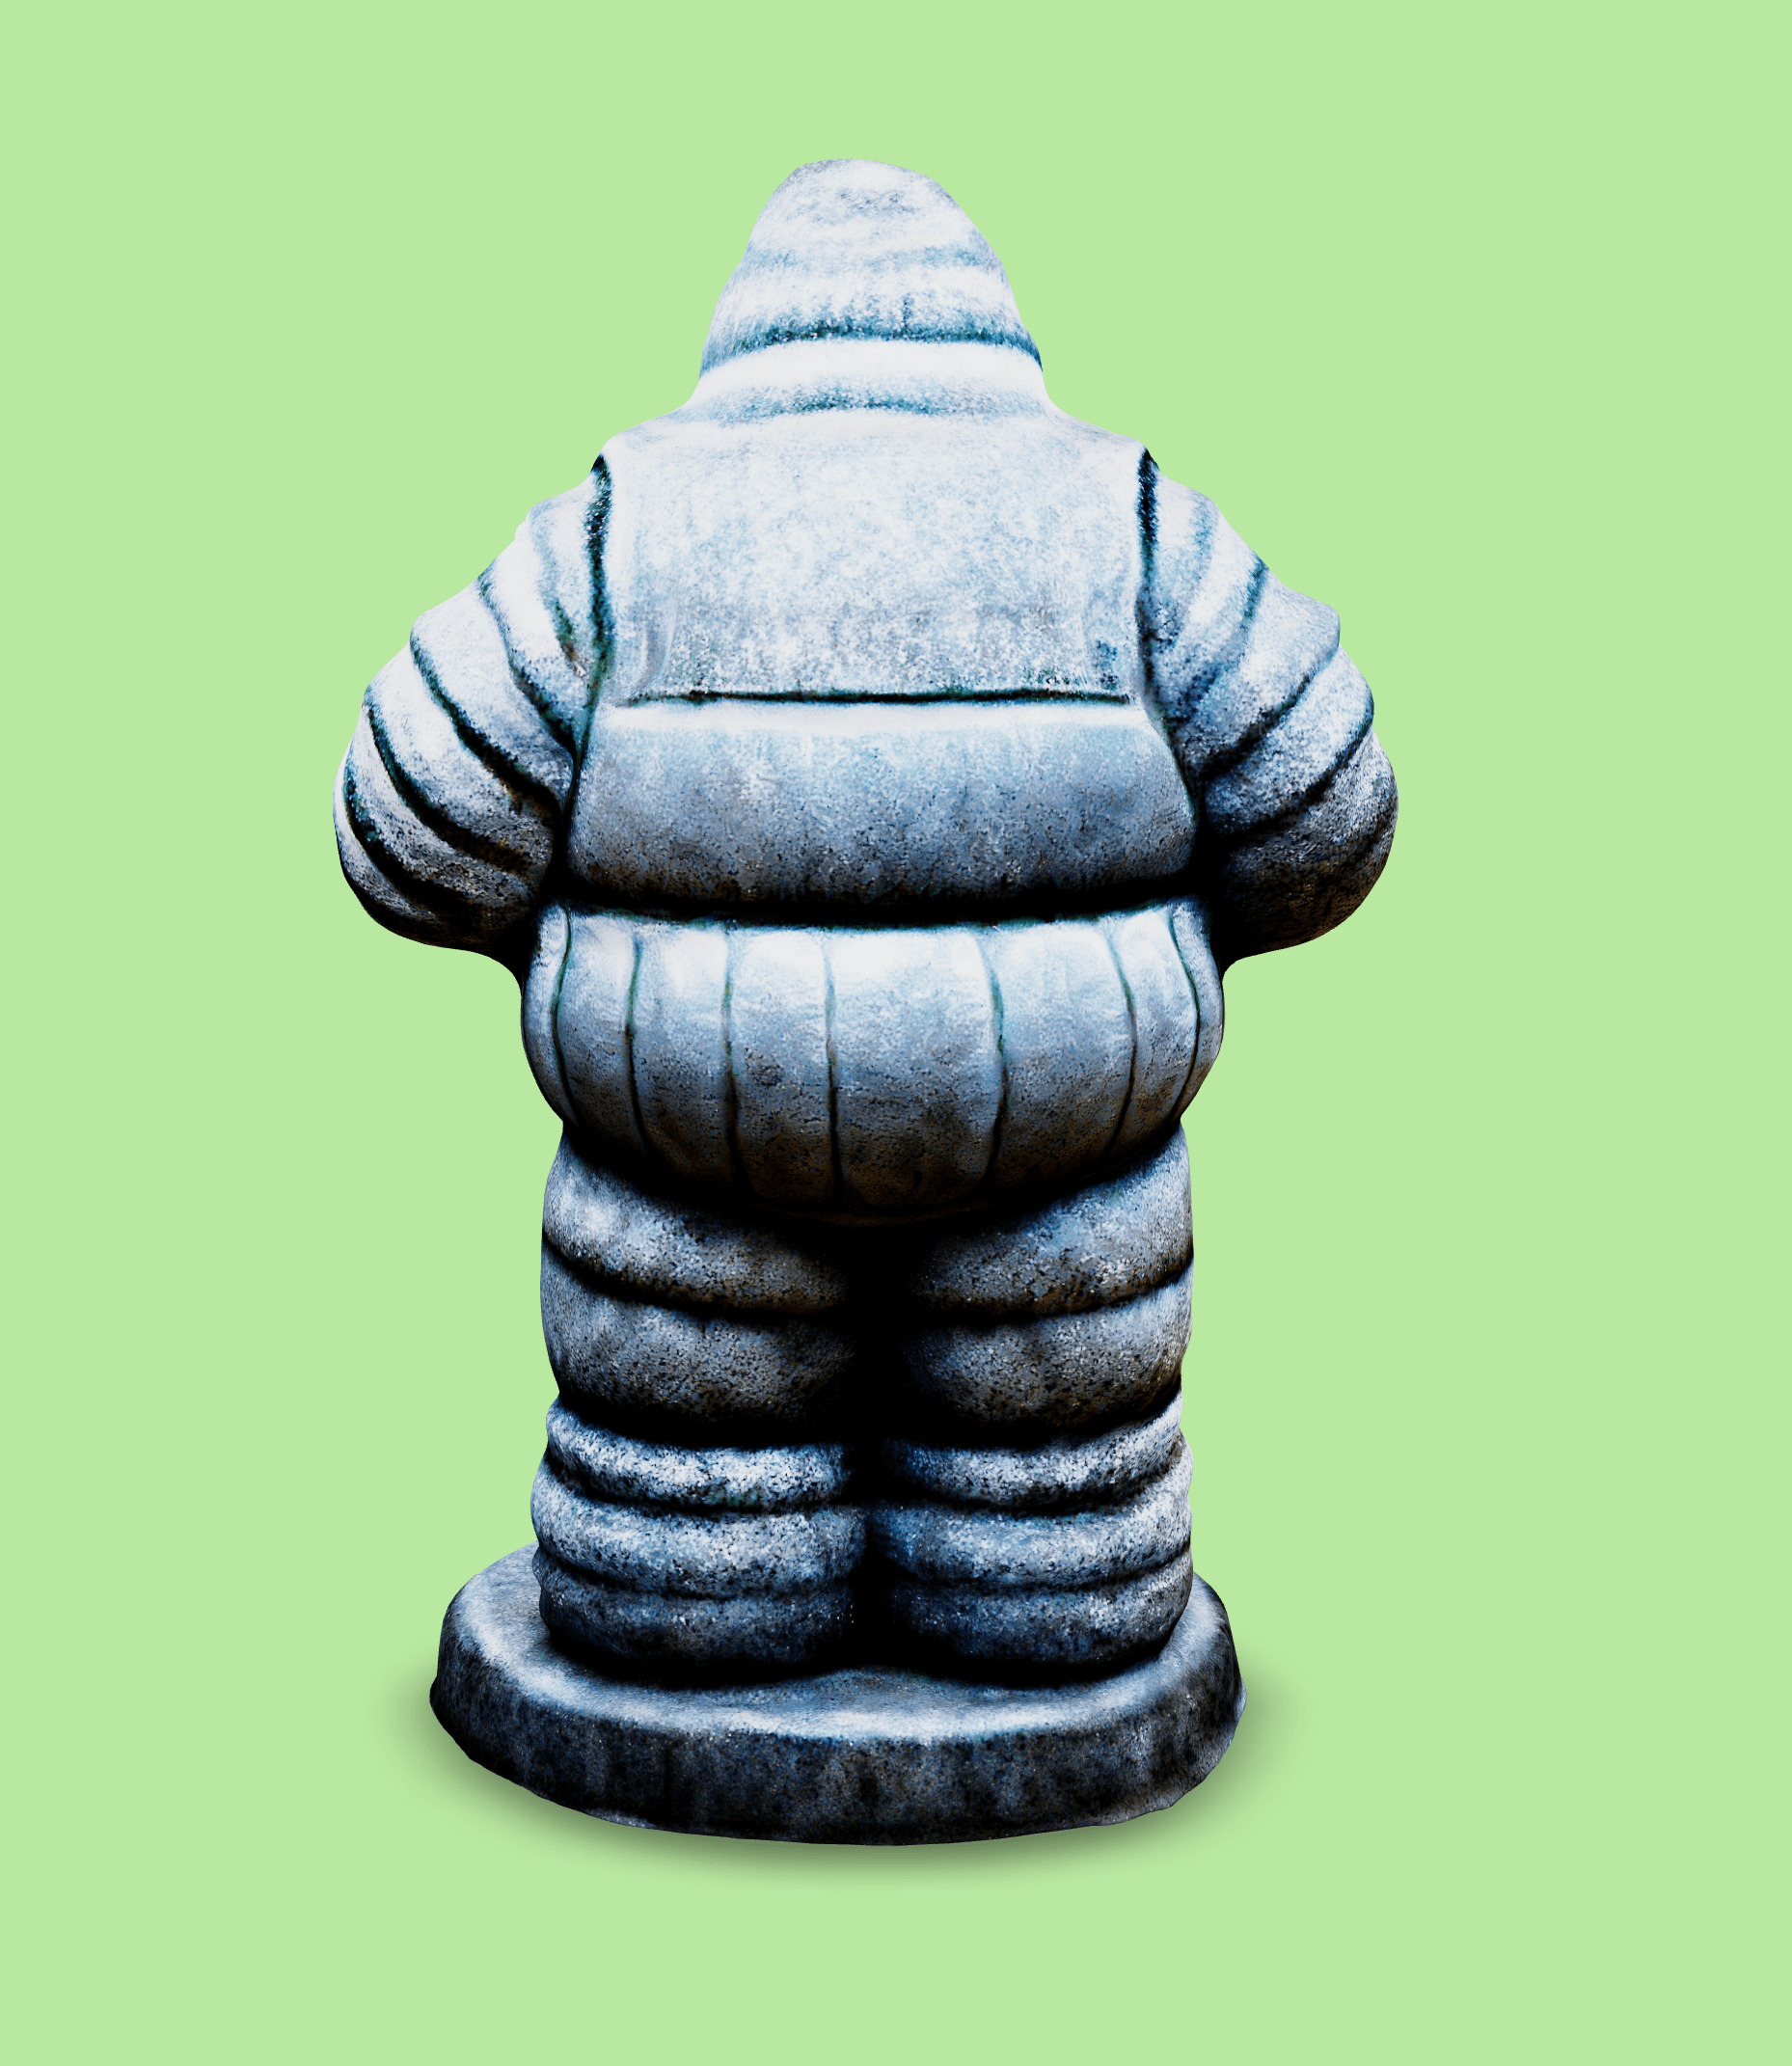 Oversize Michelin Man.glb 3d model